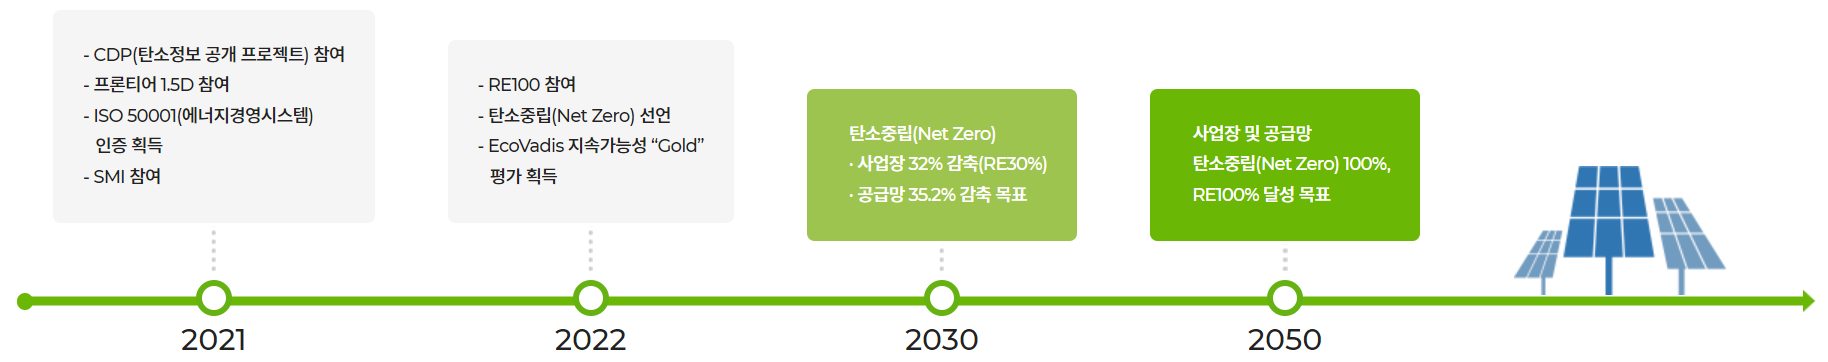 2021 - CDP(탄소정보 공개 프로젝트)참여, 프론티어1.5D참여, ISO 50001(에너지경영시스템), 인증 획득, SMI 참여 / 2022 - RE100 참여, 탄소중립(Net Zero)선언, EcoVadis 지속가능성 'Gold'평가 획득 / 2030 - 탄소중립(Net Zero), 사업장 32% 감축(RE30%), 공급망 35.2% 감축목표 / 2050 - 사업장 및 공급망 탄소중립(Net Zero)100%, RE100% 달성 목표